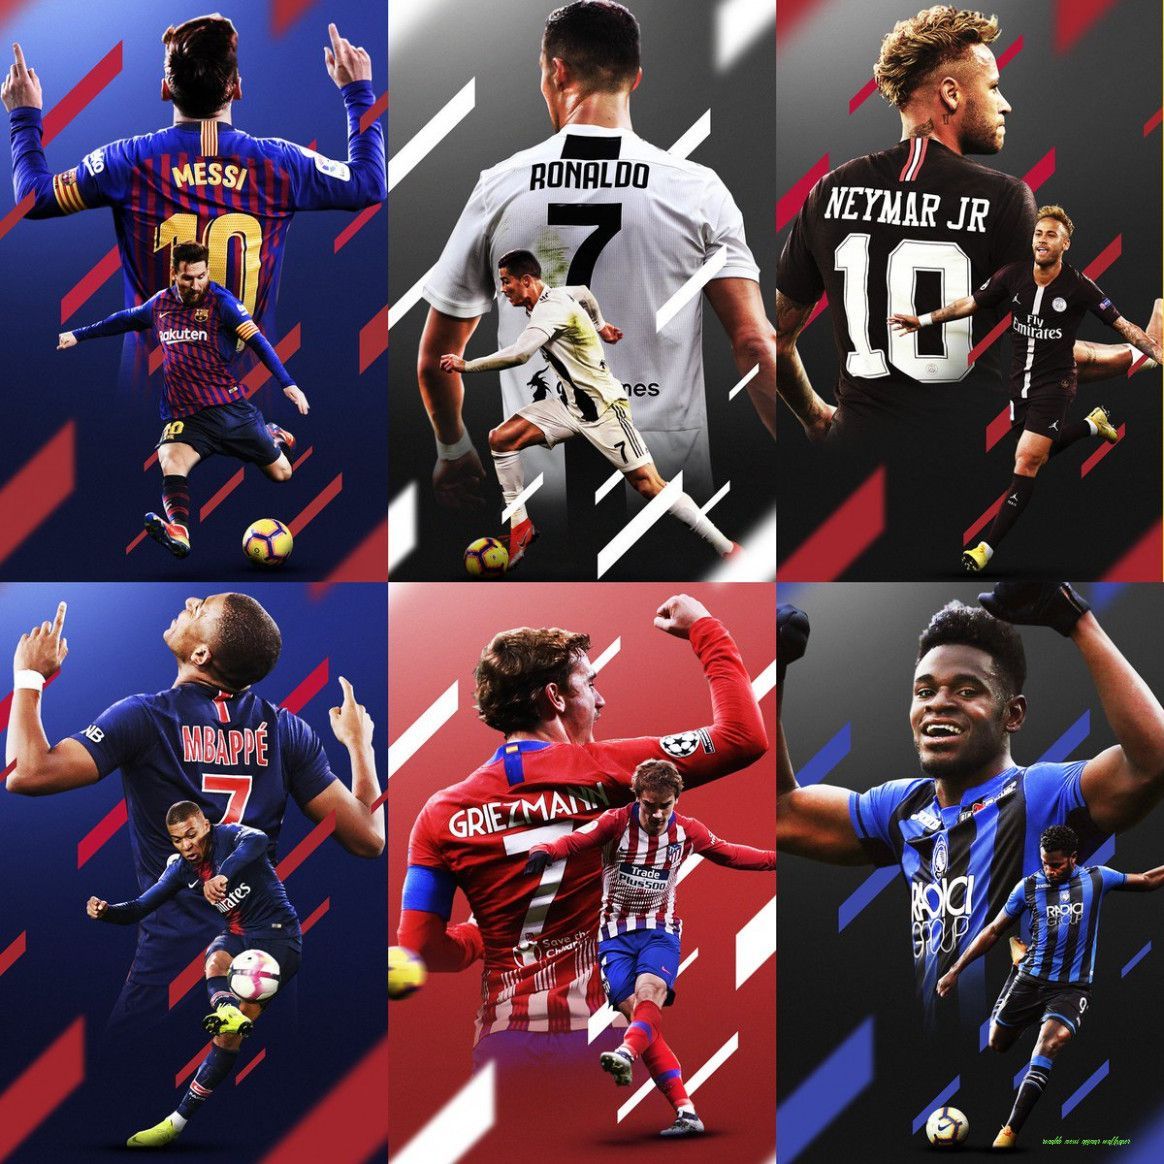 Ronaldo Messi Neymar Wallpaper .com